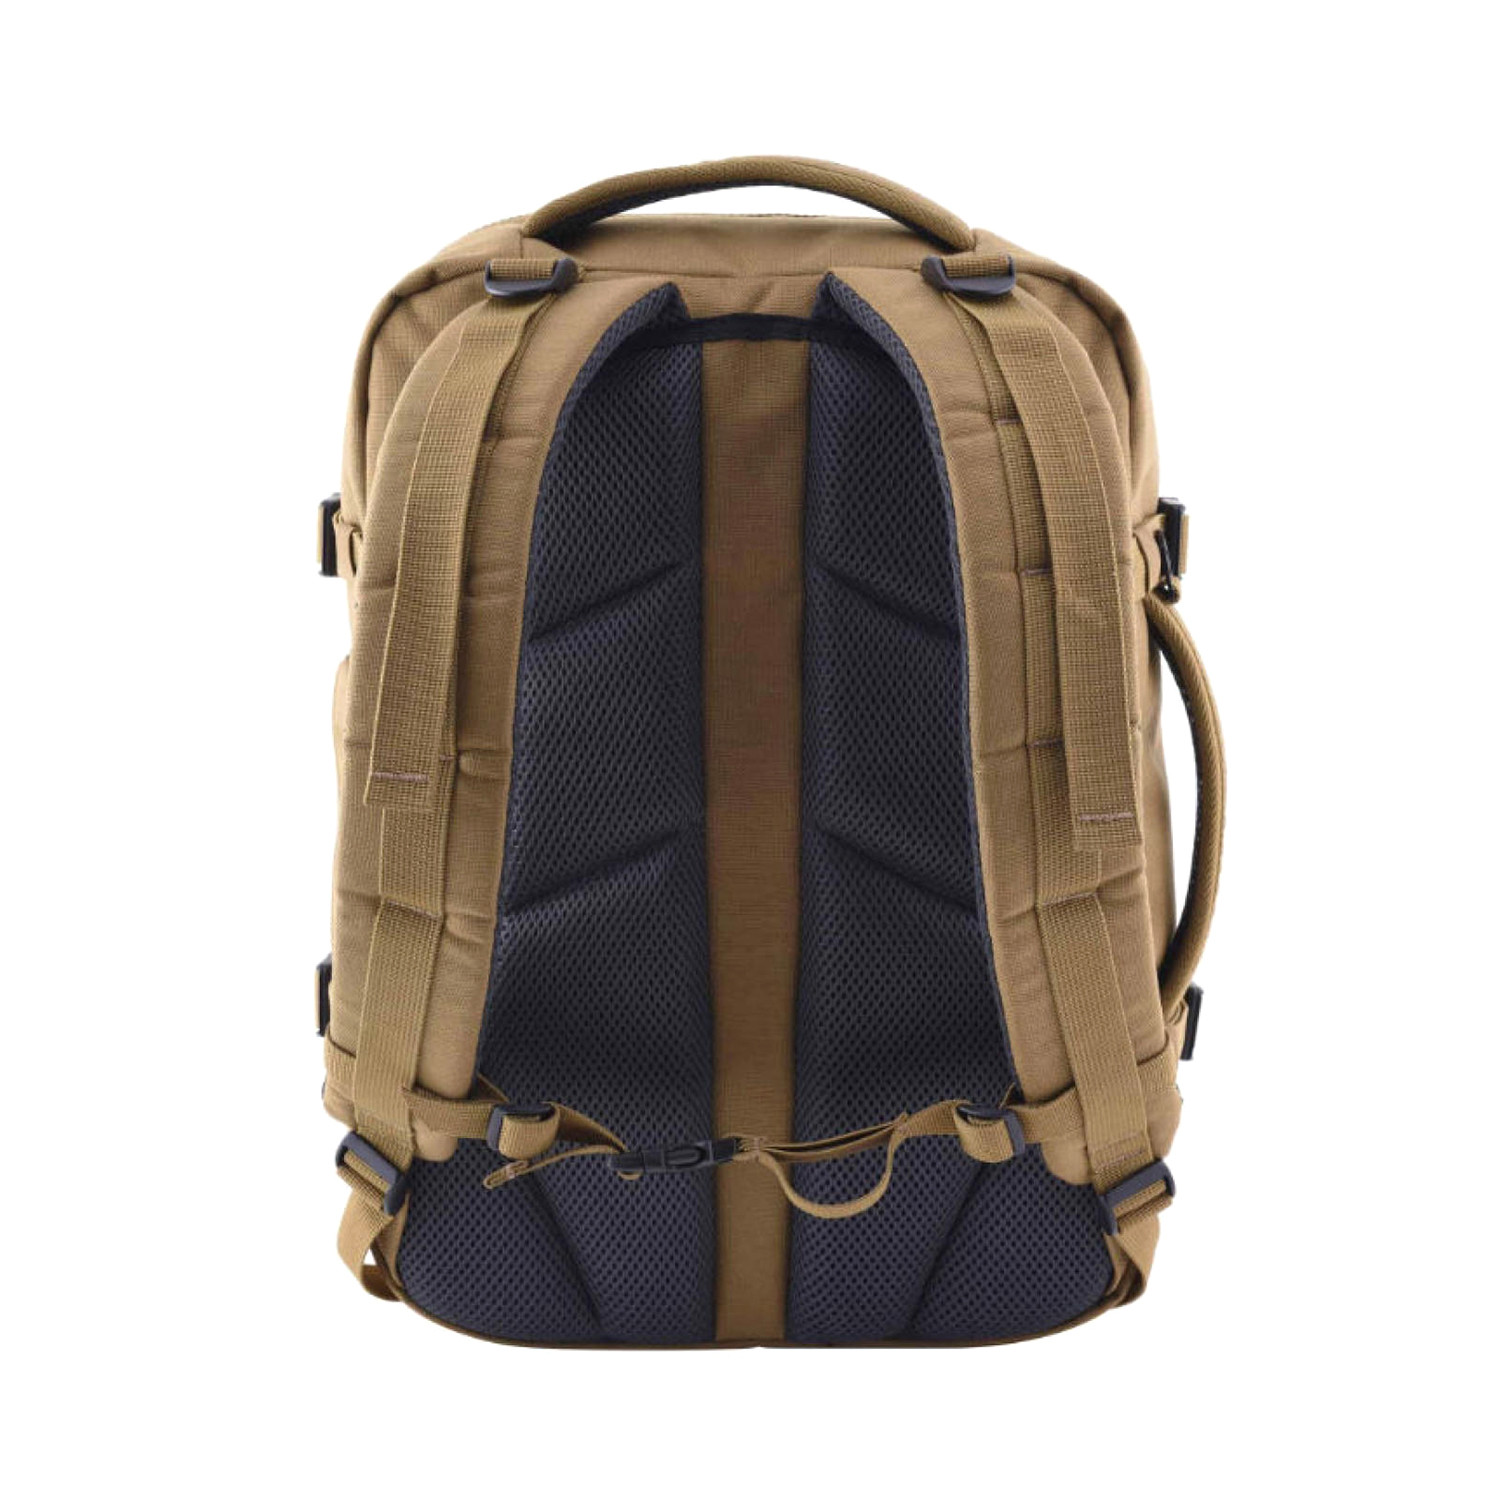 28L Military Backpack // Desert Sand - Cabin Zero - Touch of Modern